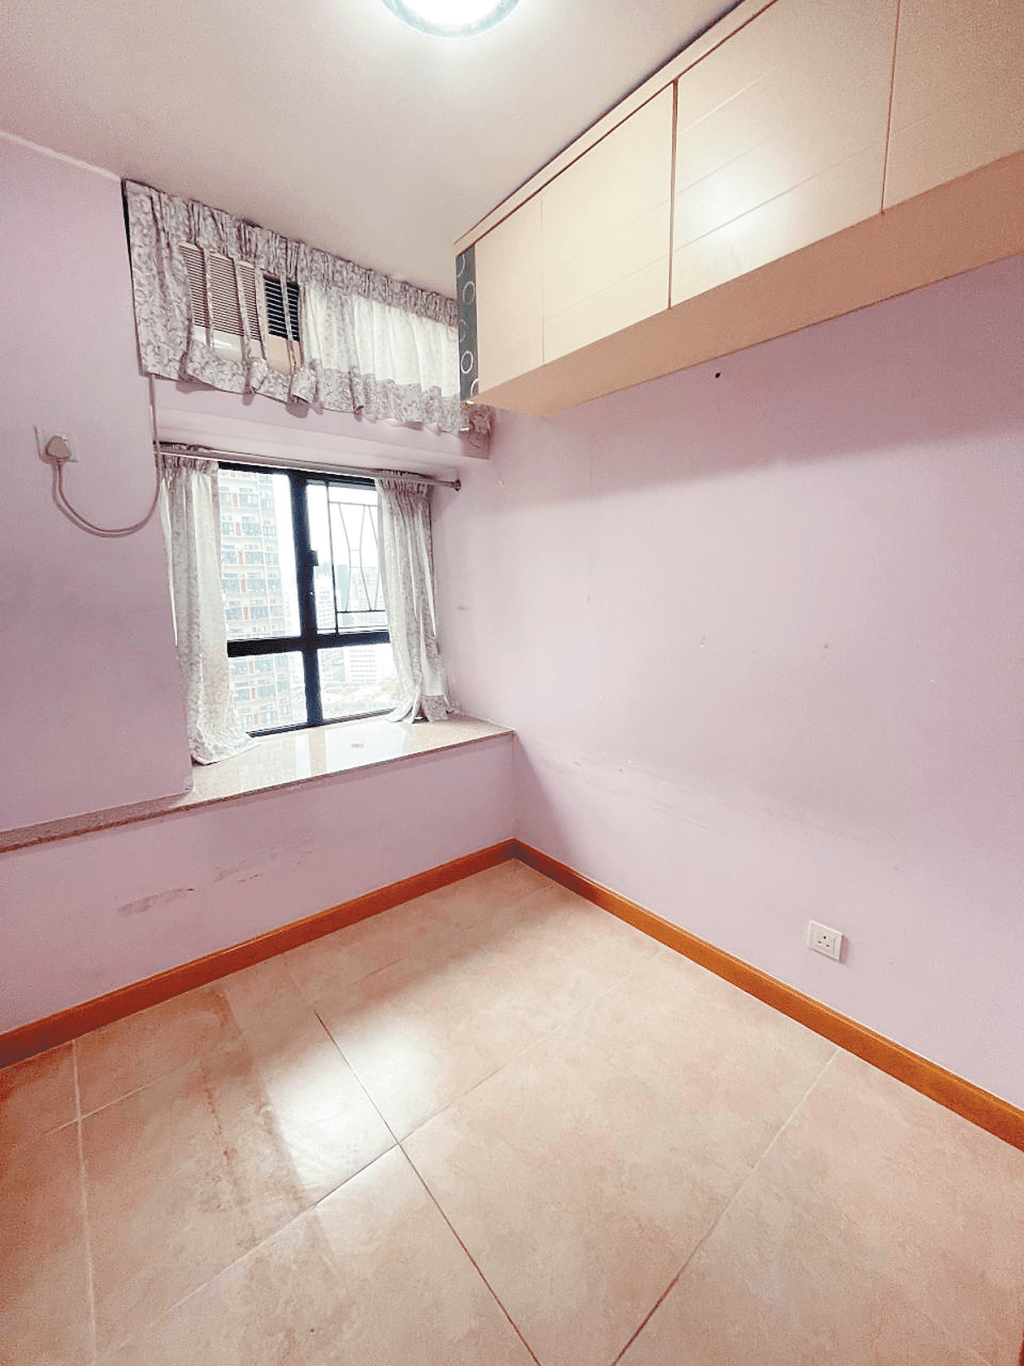 另一房間採用粉紅色作牆身，有吊櫃可作藏書之用。